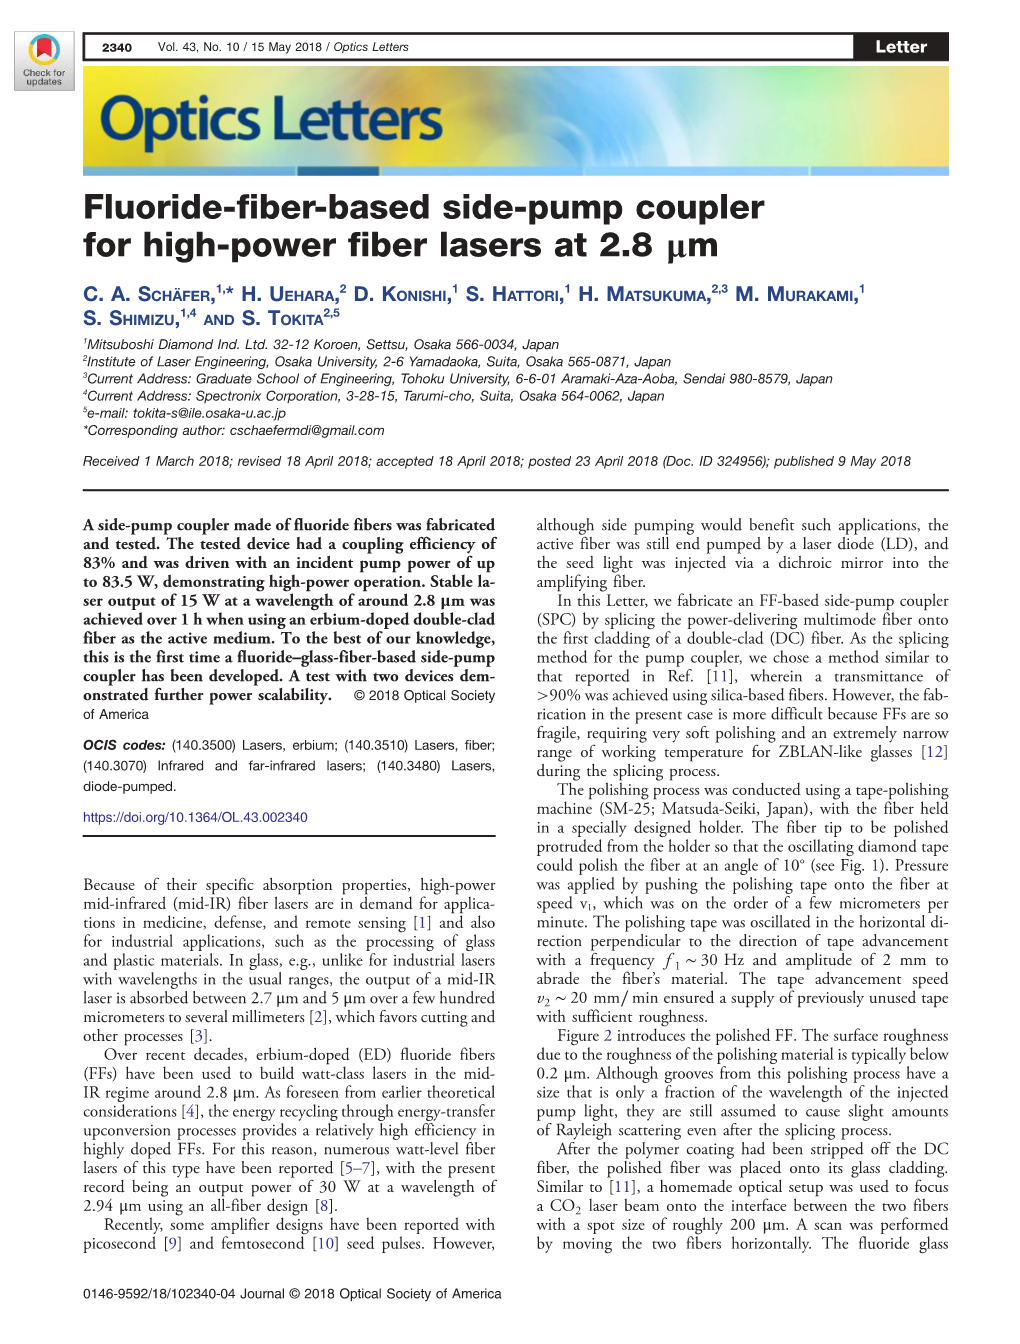 Fluoride-Fiber-Based Side-Pump Coupler for High-Power Fiber Lasers at 2.8 Μm